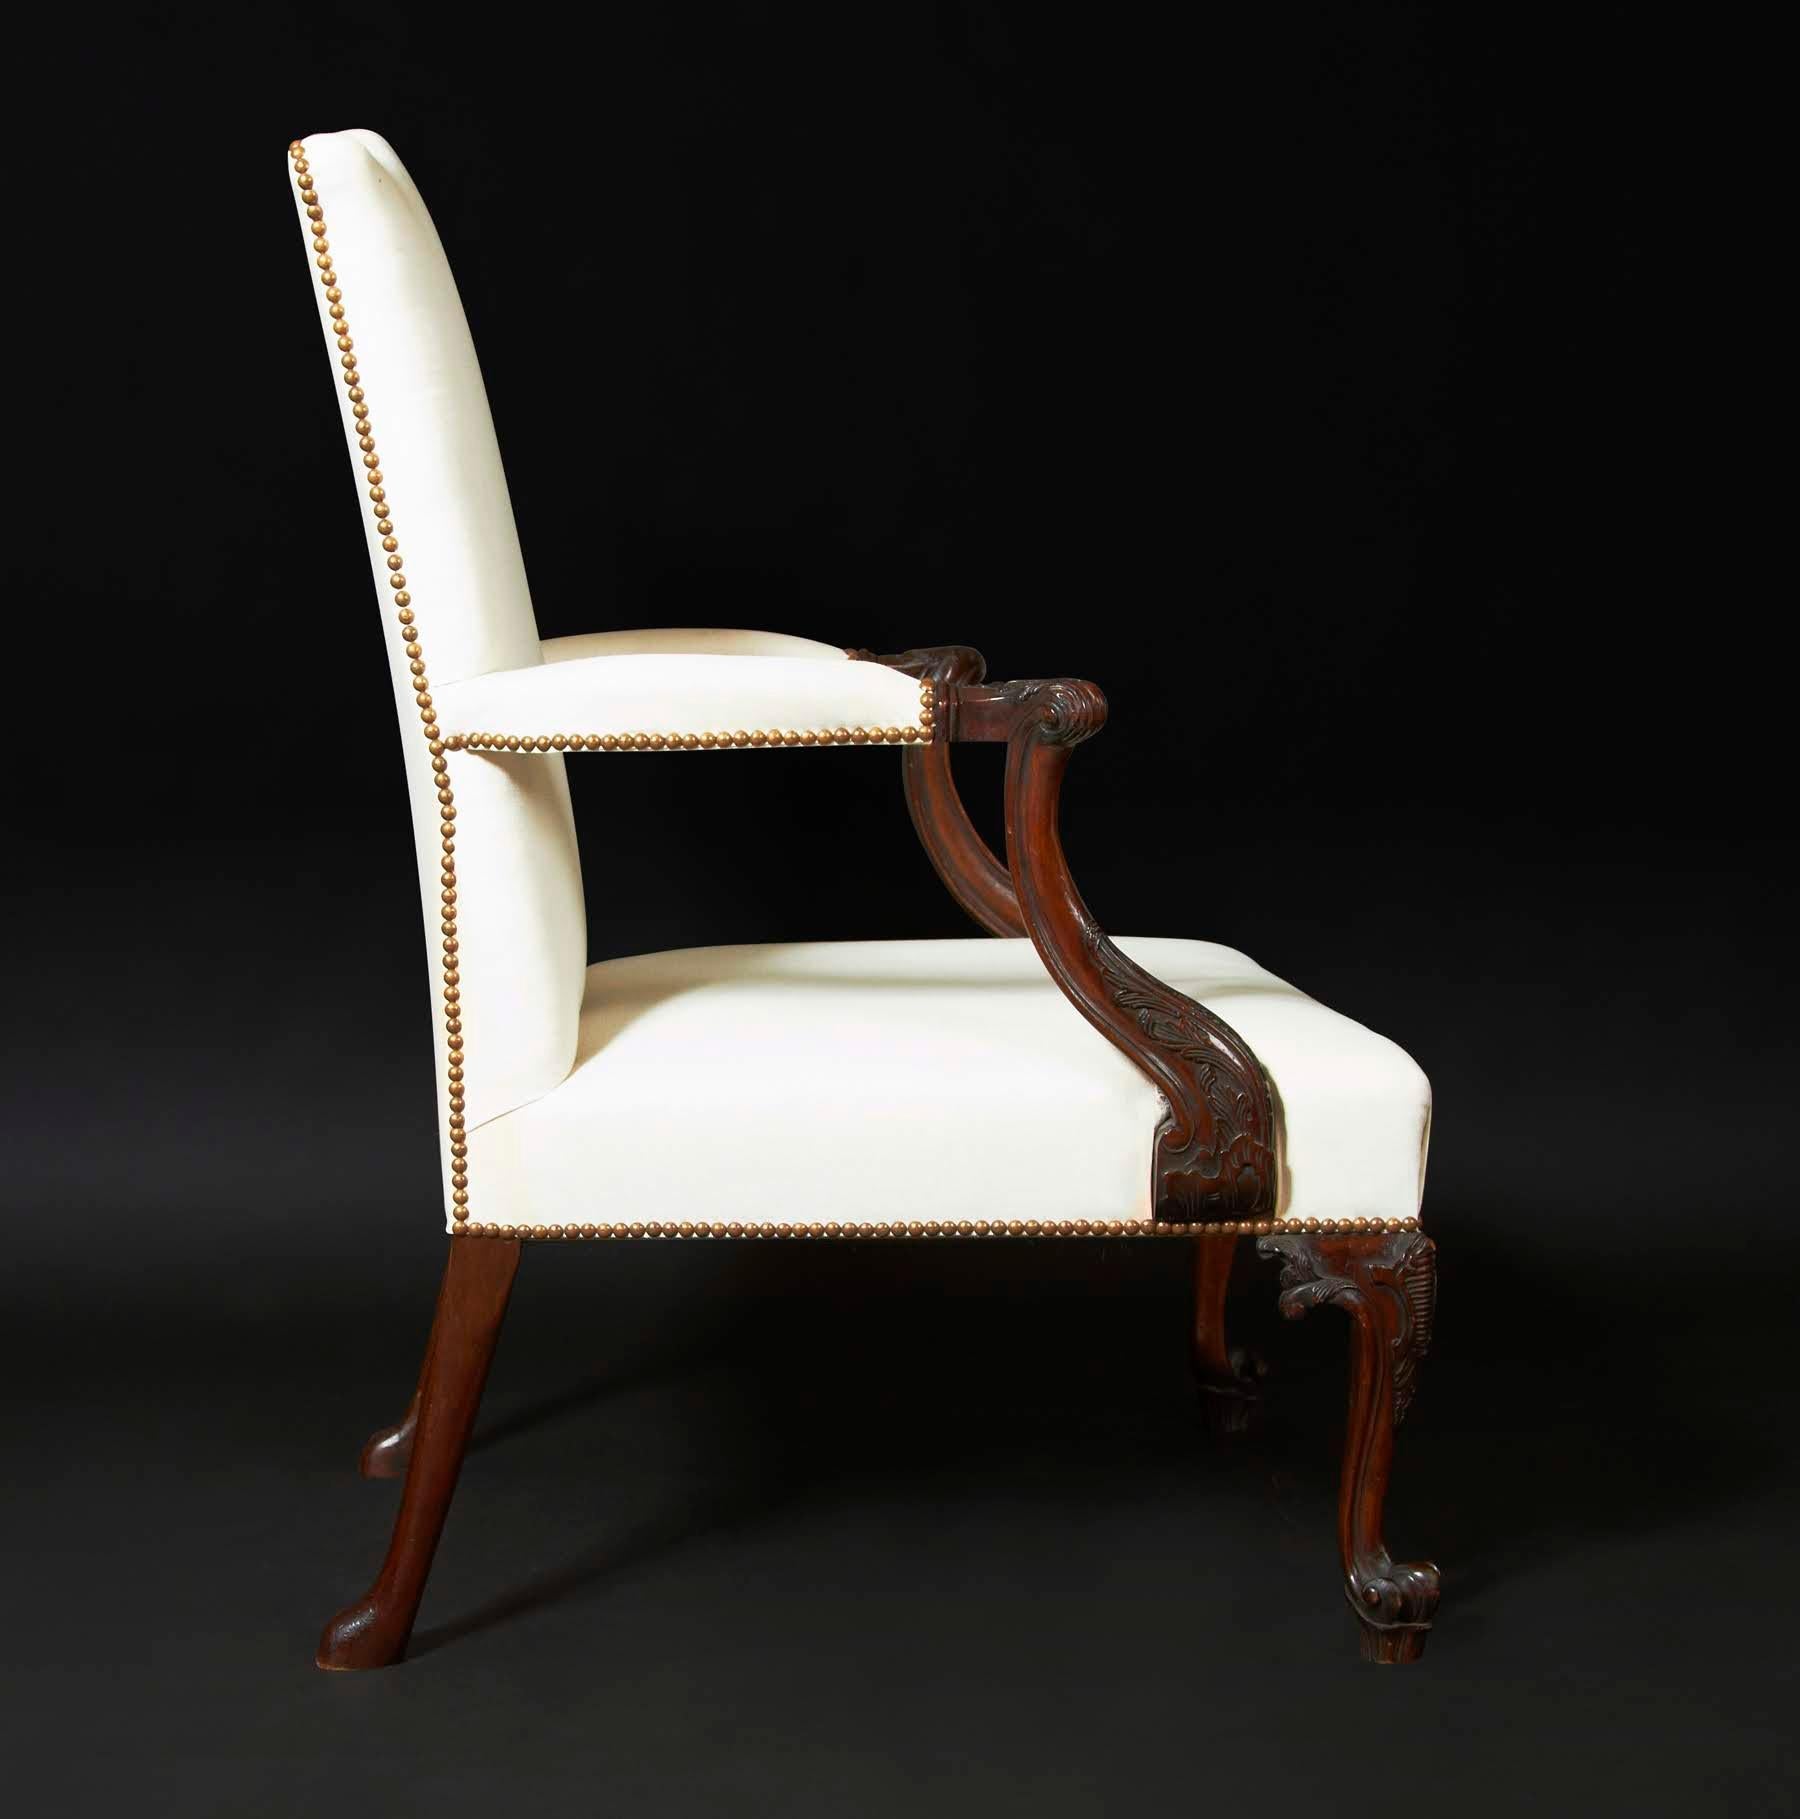 Der Chippendale Gainsborough Sessel. Dieser hübsche geschnitzte Mahagoni-Bibliotheks- oder 